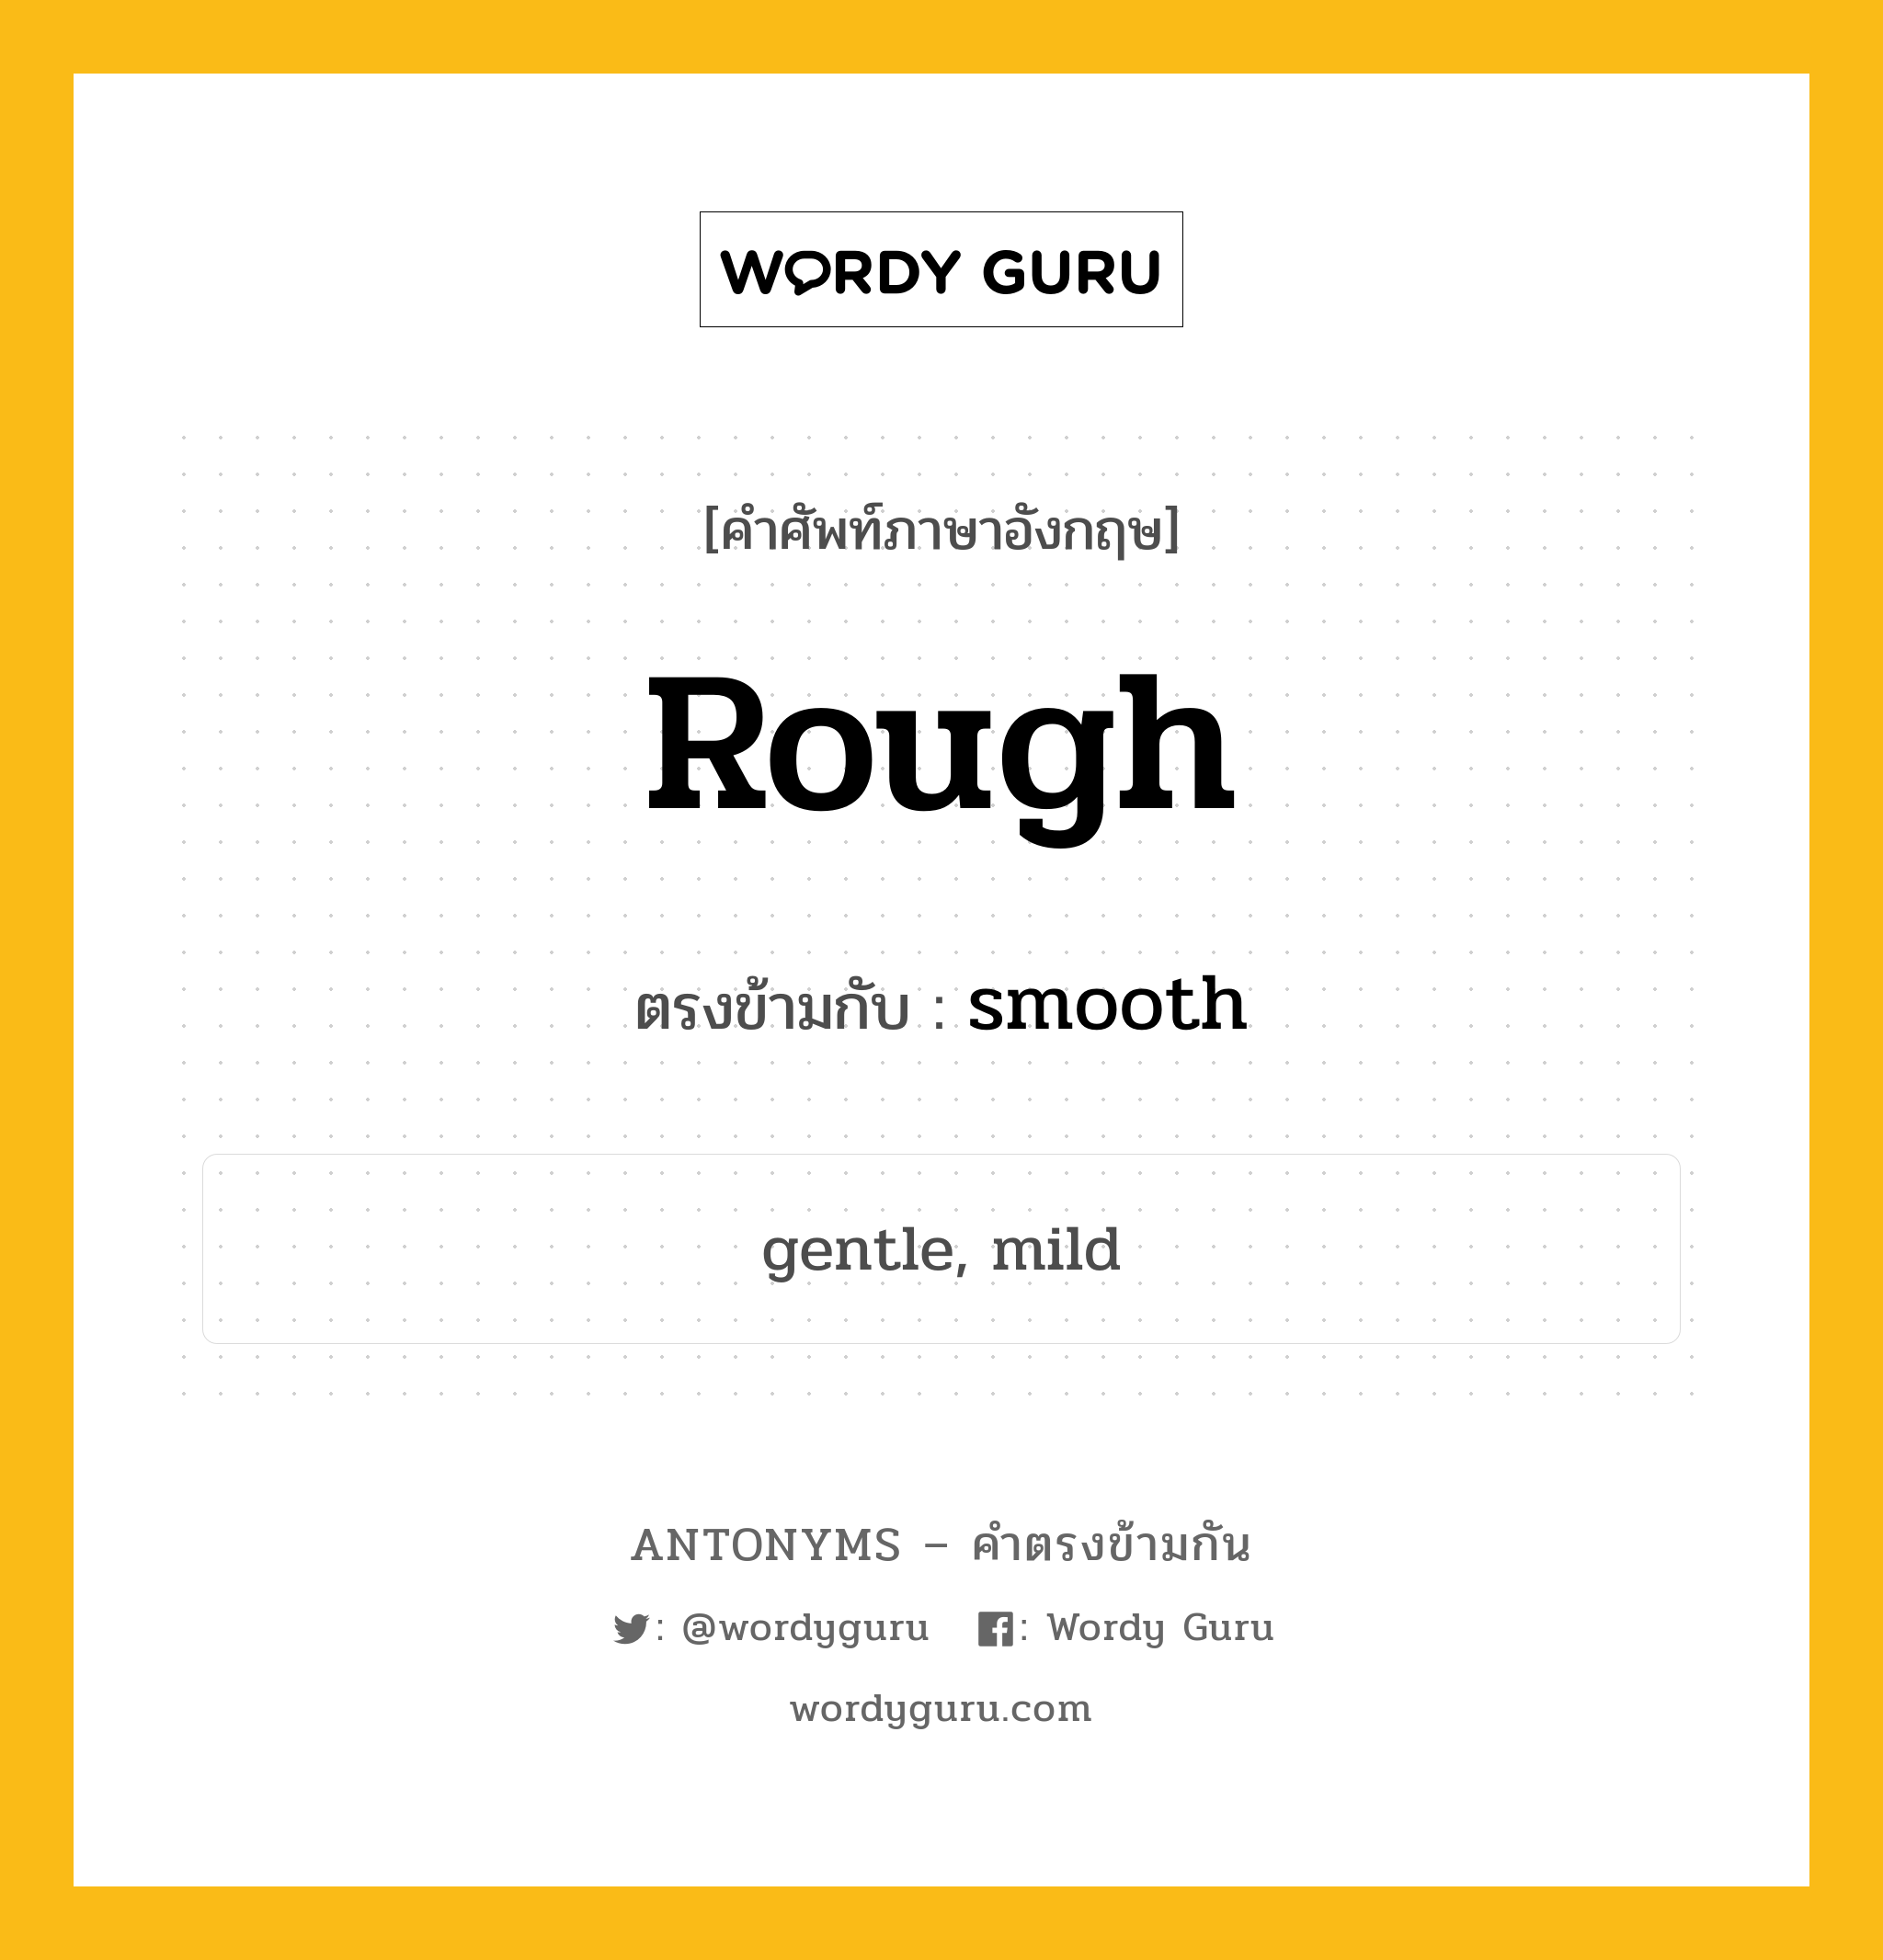 rough เป็นคำตรงข้ามกับคำไหนบ้าง?, คำศัพท์ภาษาอังกฤษ rough ตรงข้ามกับ smooth หมวด smooth